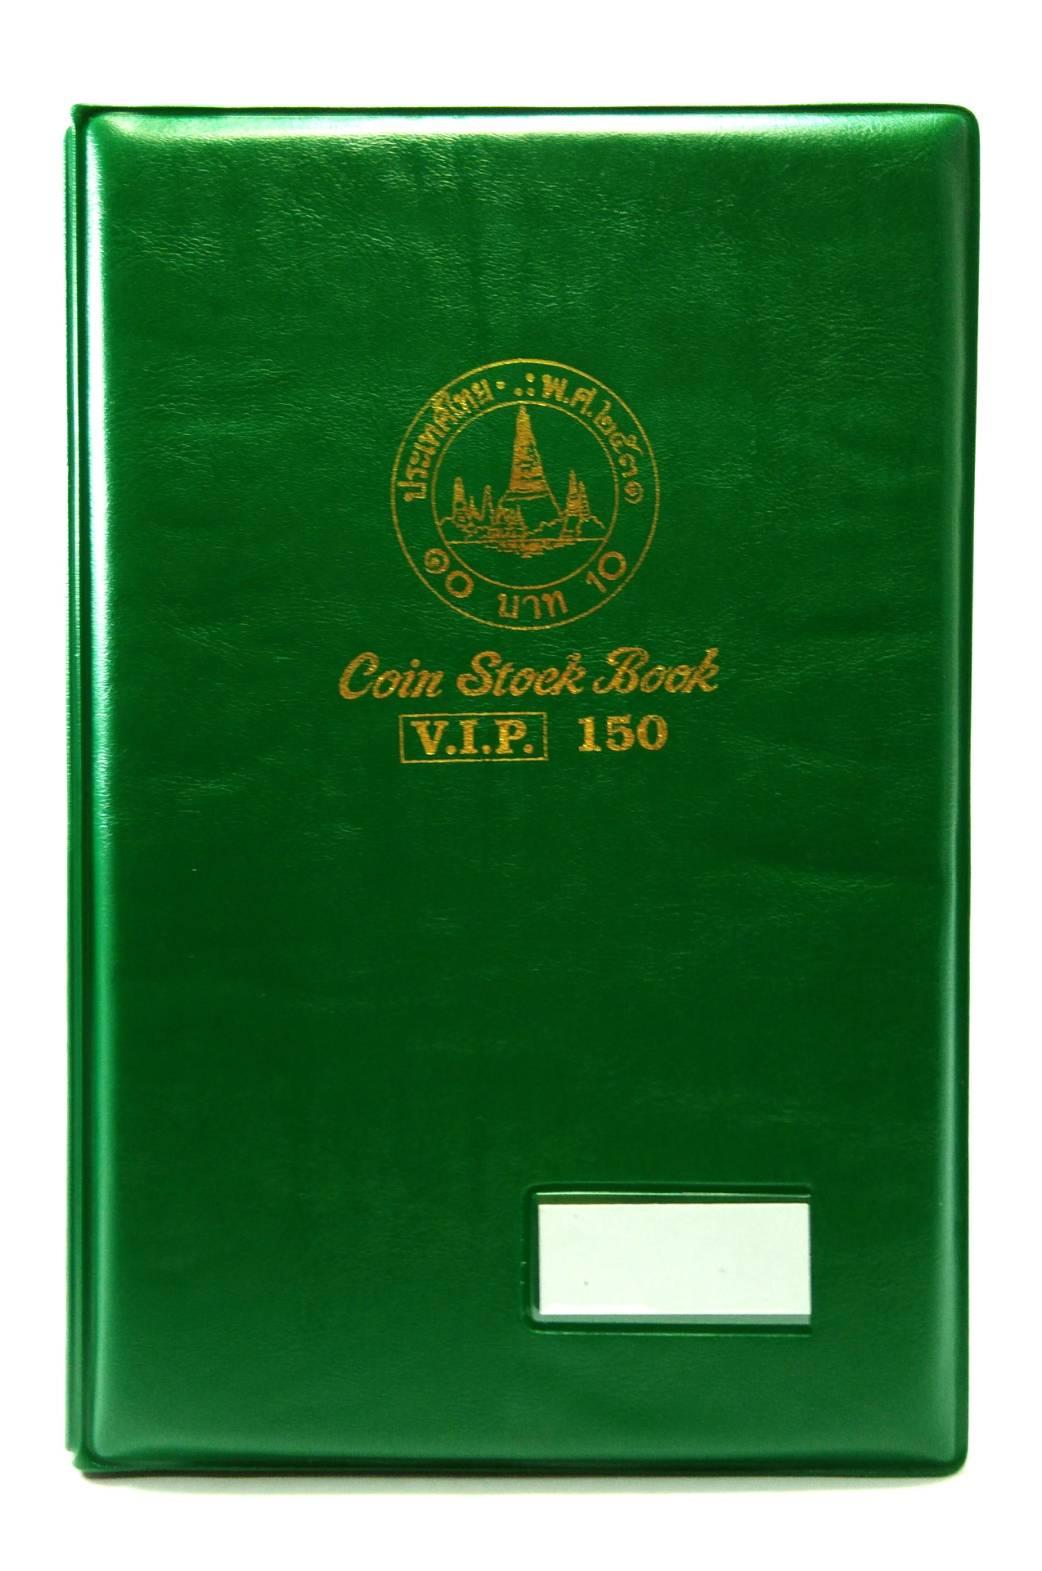 สมุดใส่เหรียญสะสม รุ่นVIP150 ใส่ได้150ช่อง ขนาด24.3x16.3 จำนวน 1เล่ม สีเขียว